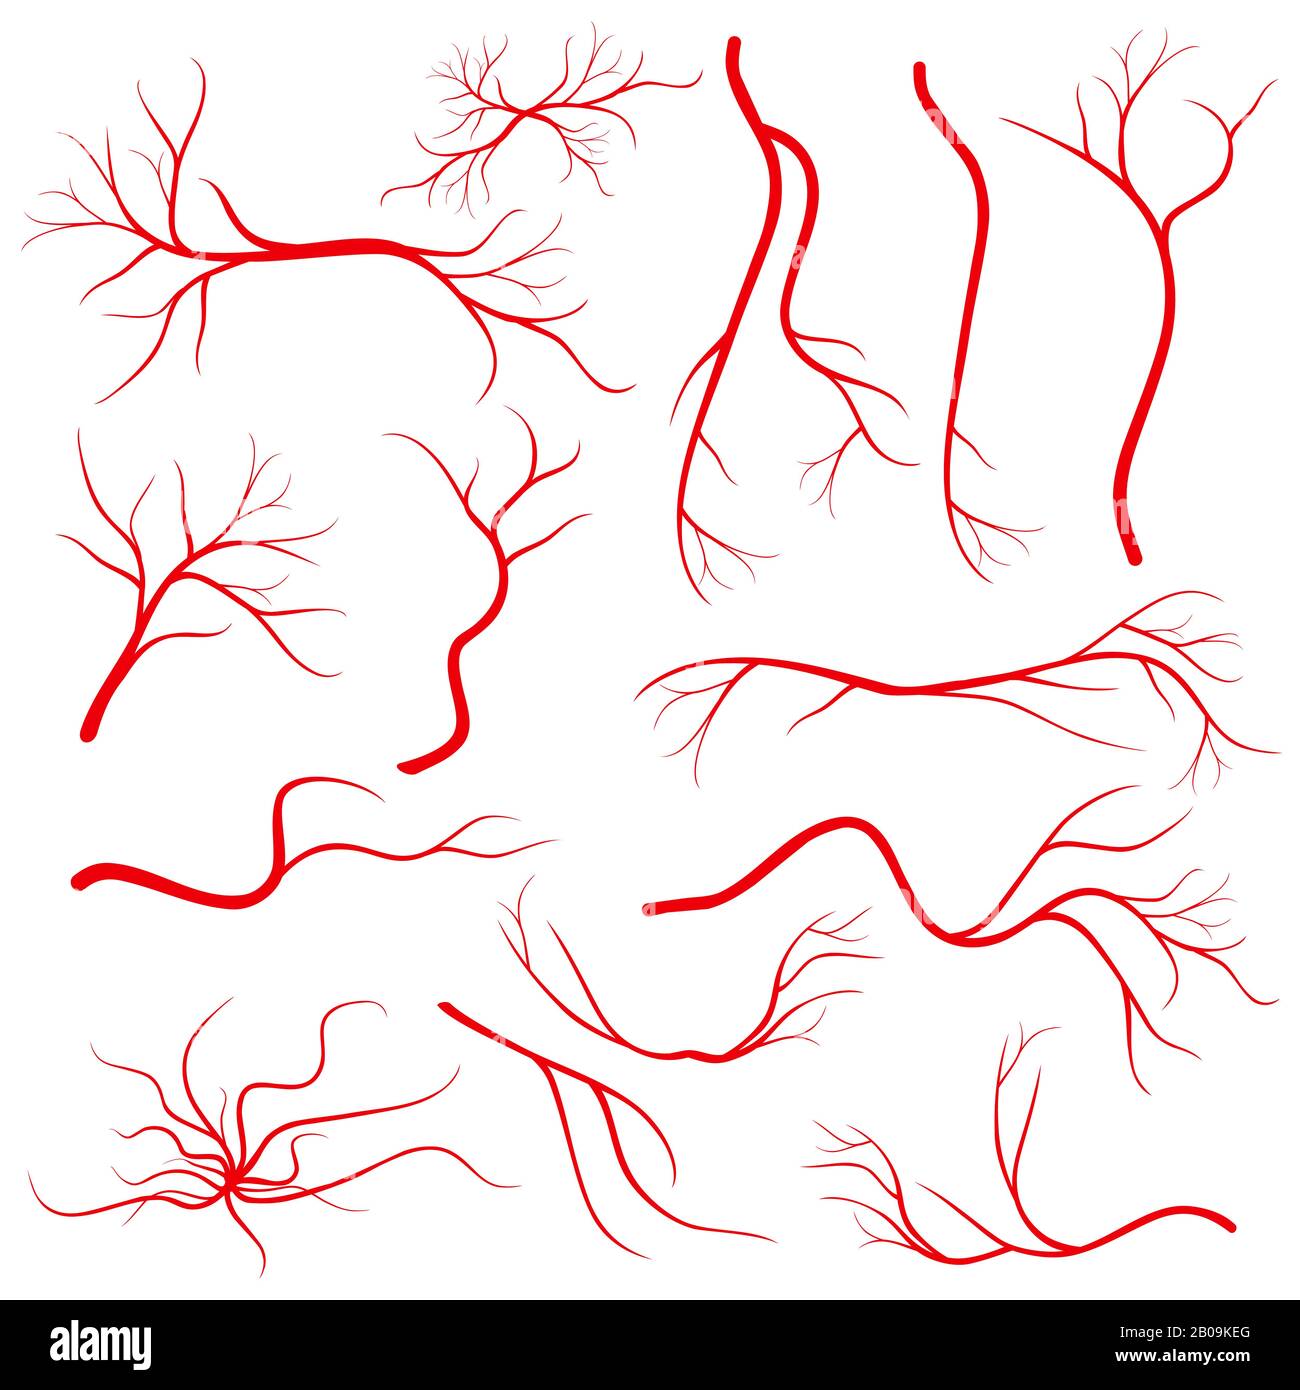 Vene dell'occhio umano, vaso, arterie del sangue isolate su vettore bianco. Gruppo di vene del sangue, immagine di vene rosse salute illustrazione Illustrazione Vettoriale